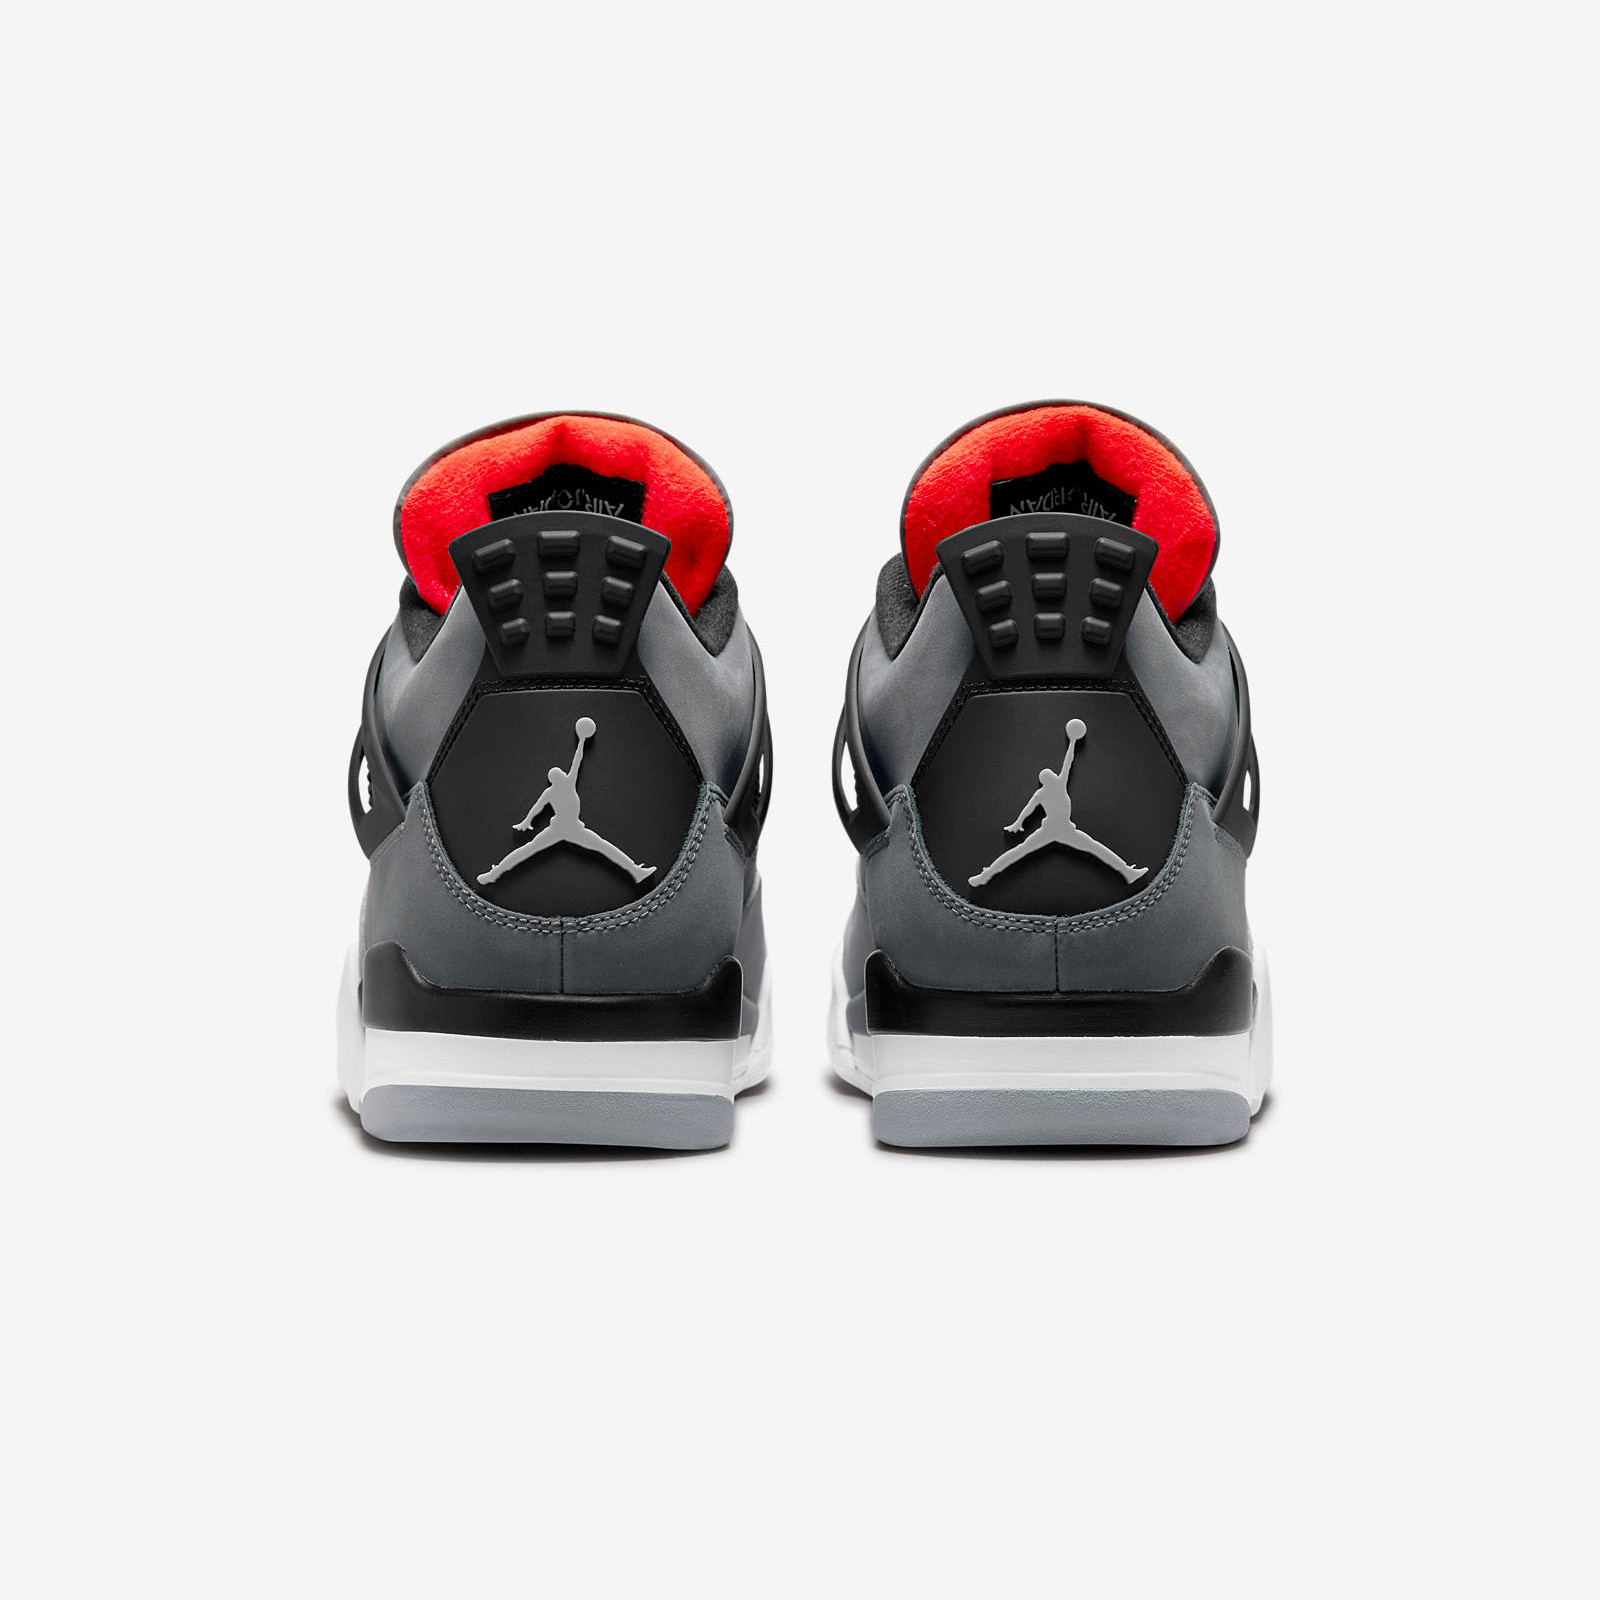 Air Jordan 4
« Infrared »